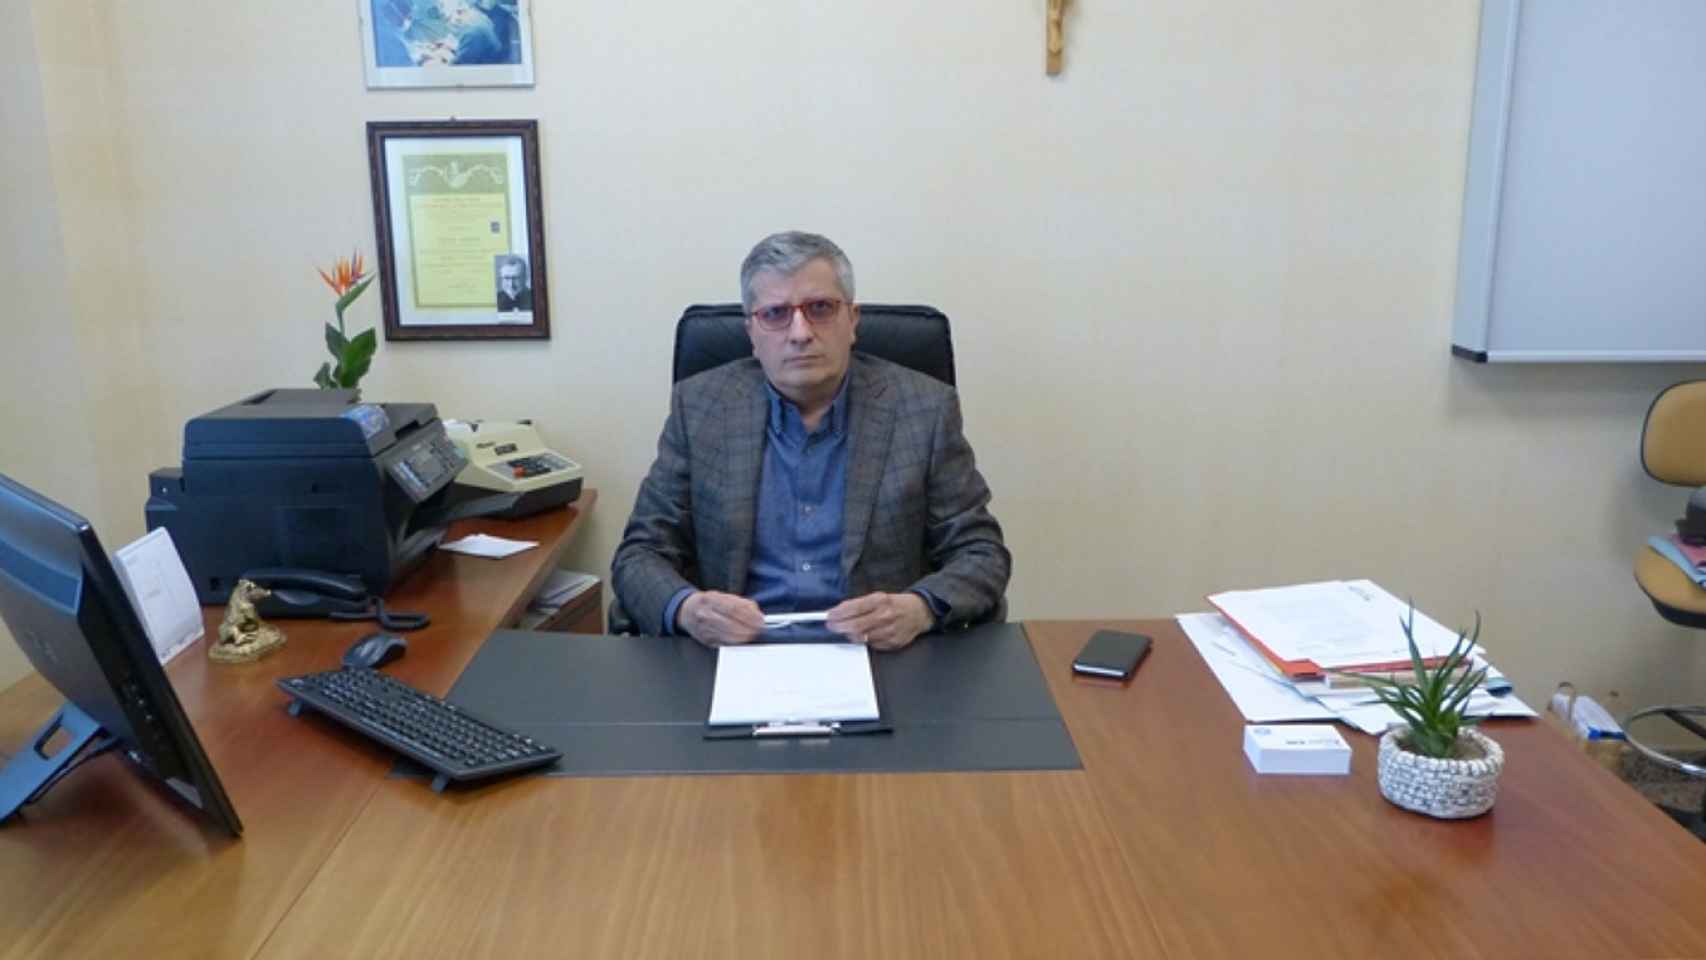 Giuseppe Iuvara en su despacho.